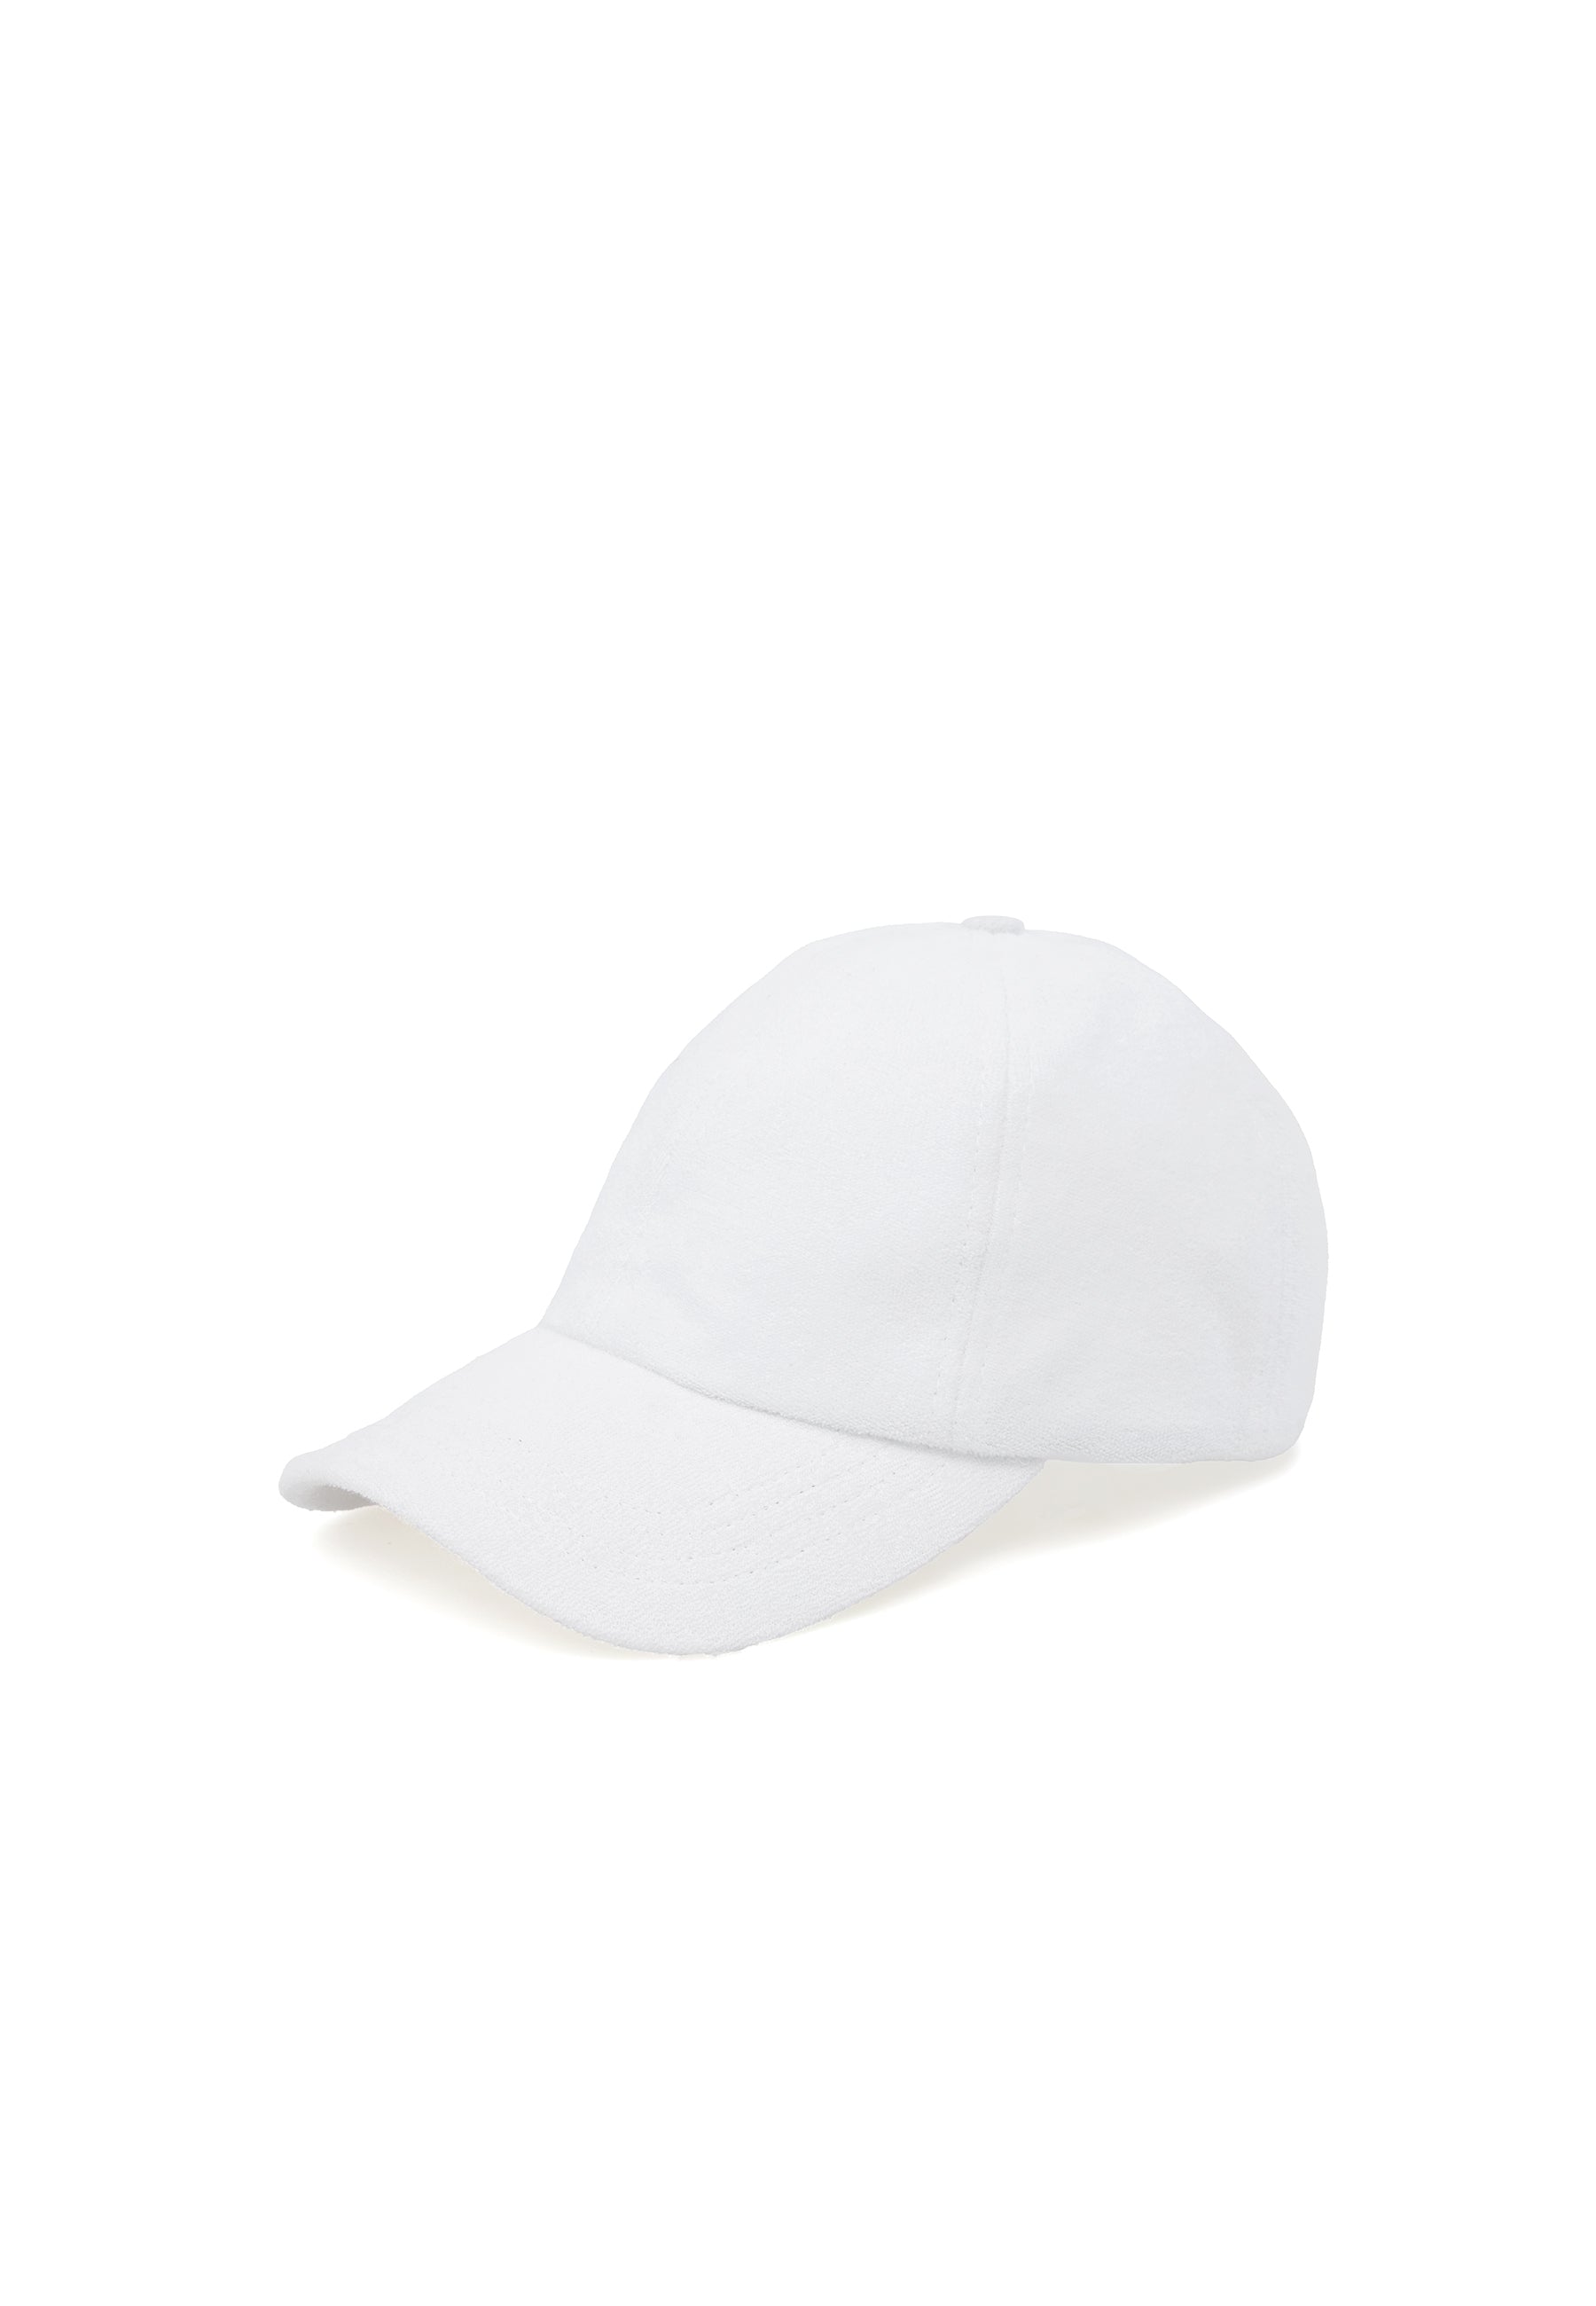 WMTOWEL CAP in White